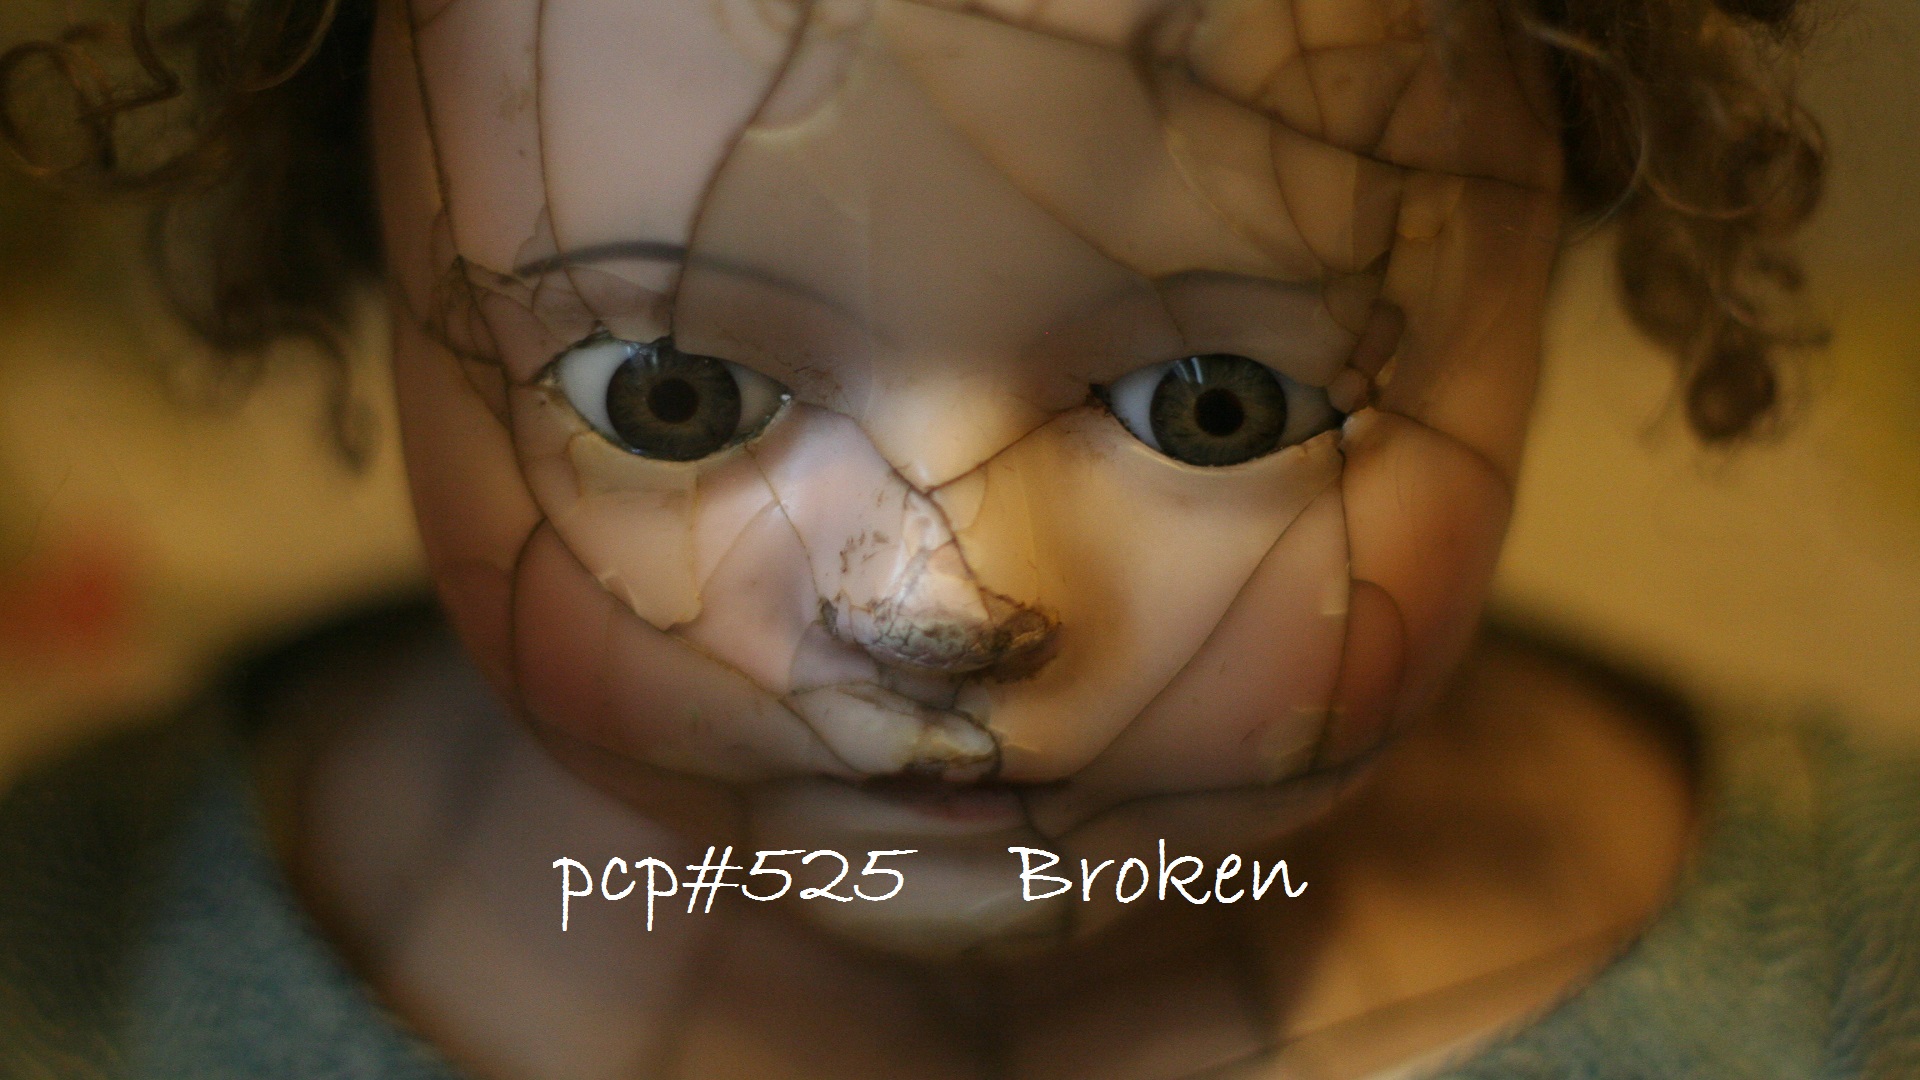 PCP#525... Broken...